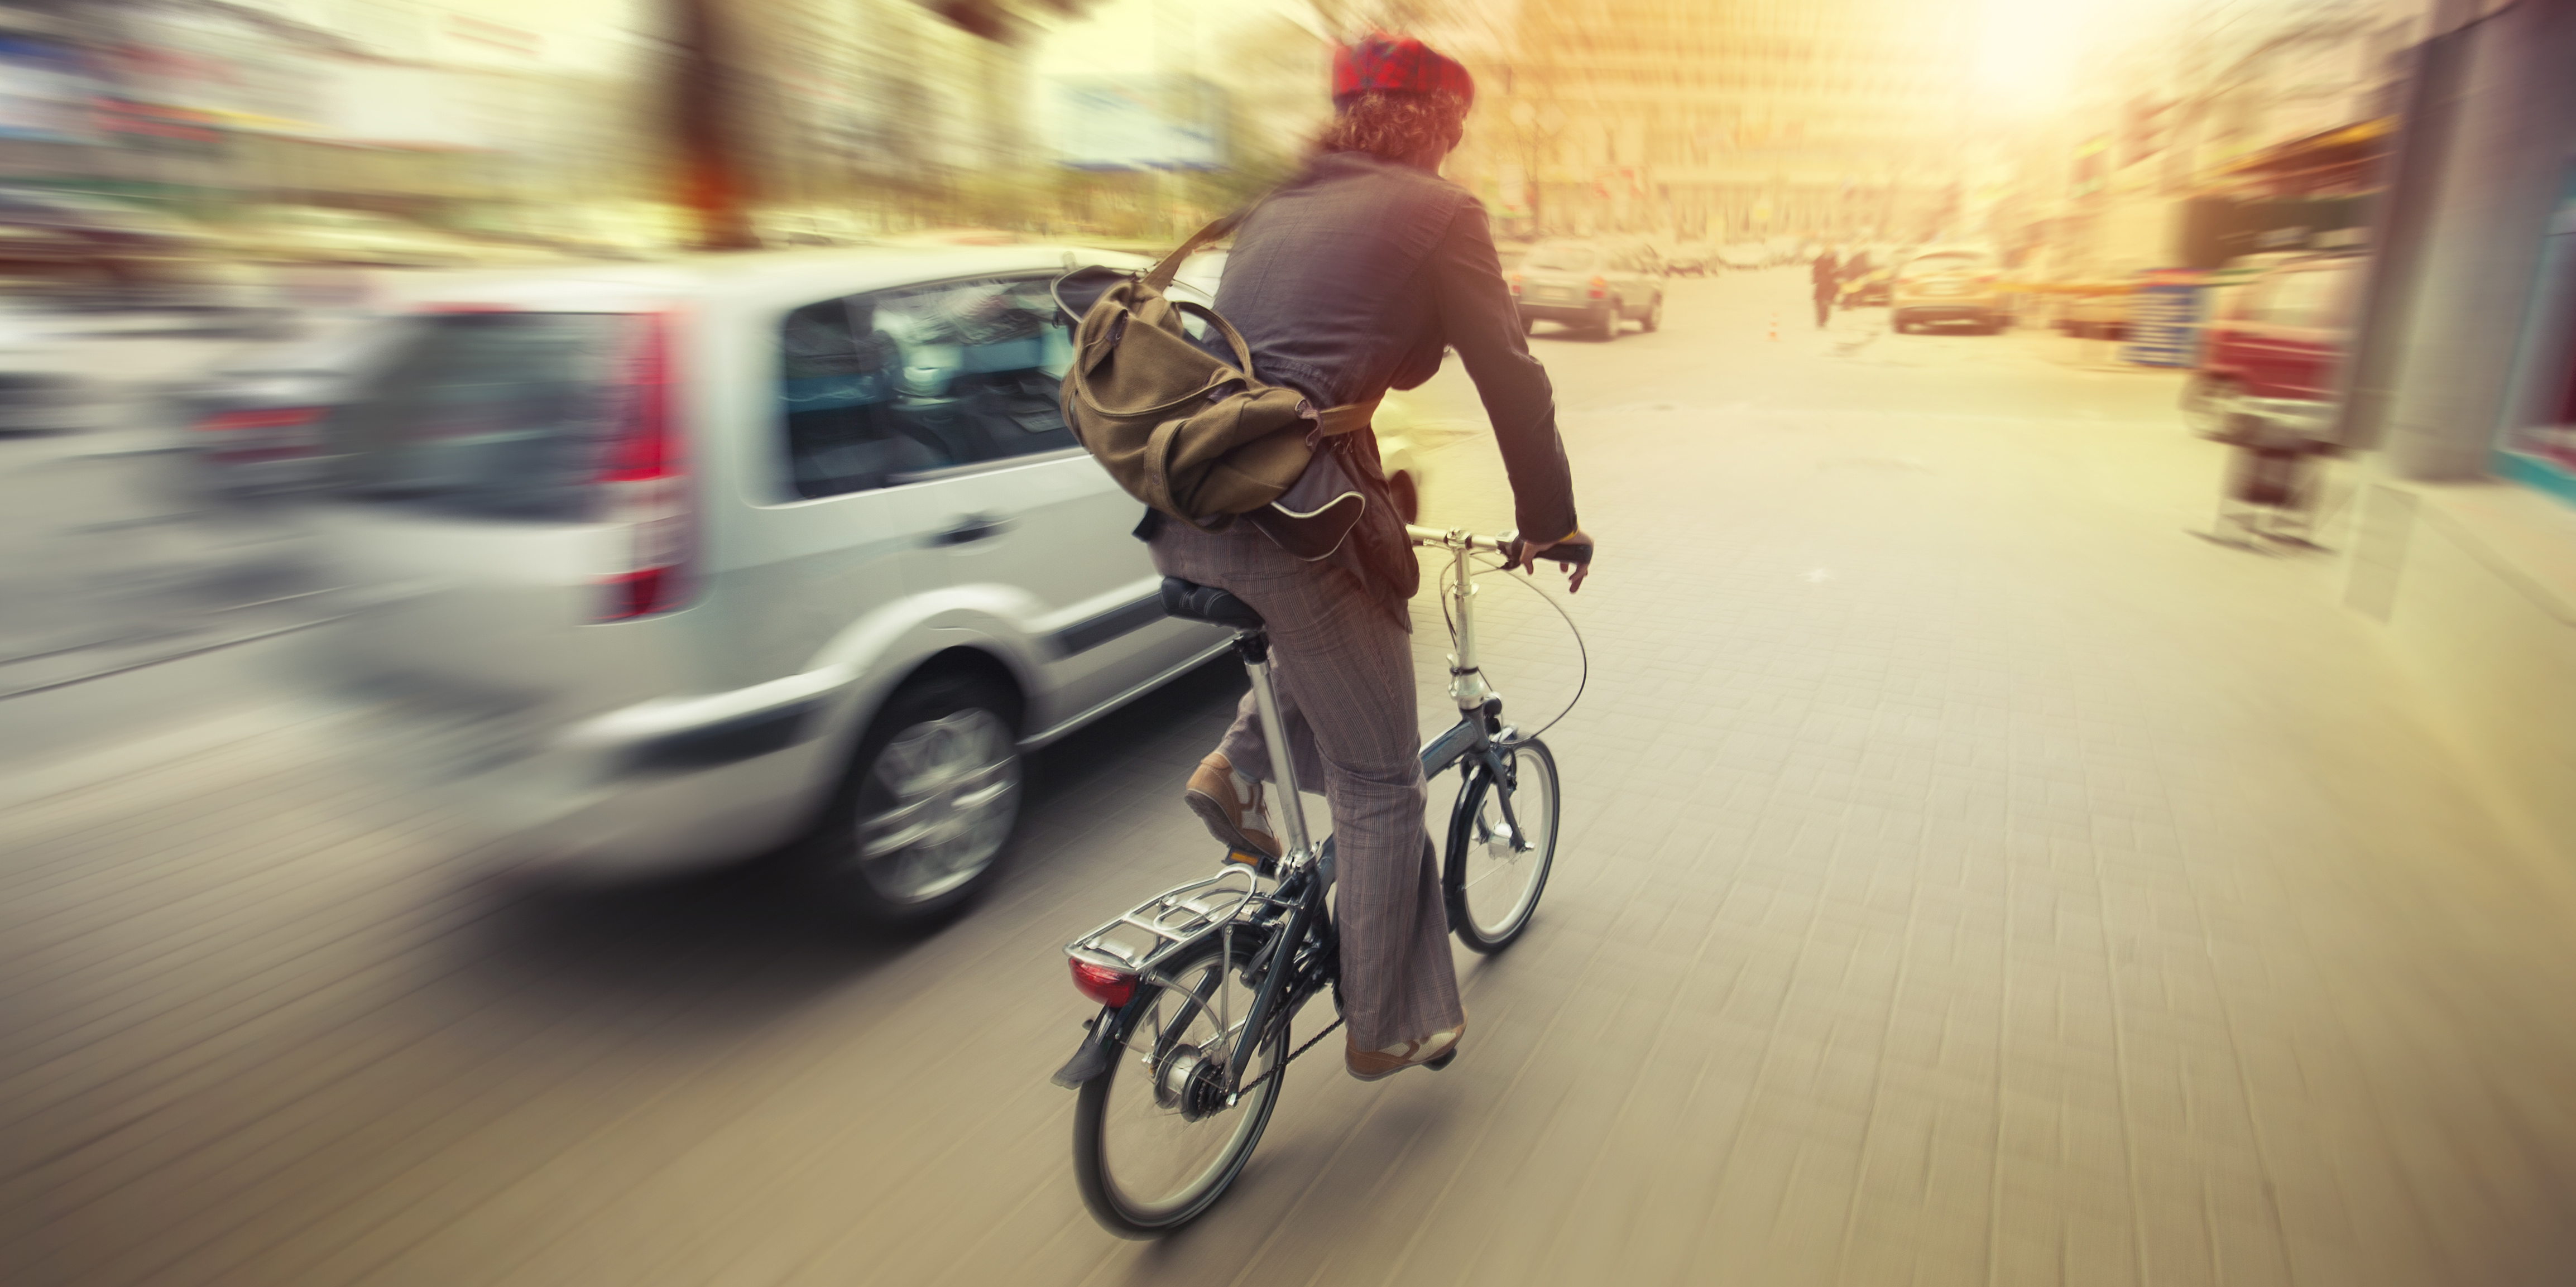 Stationnements pour les vélos : que dit la loi ? - Collectif Cycliste 37